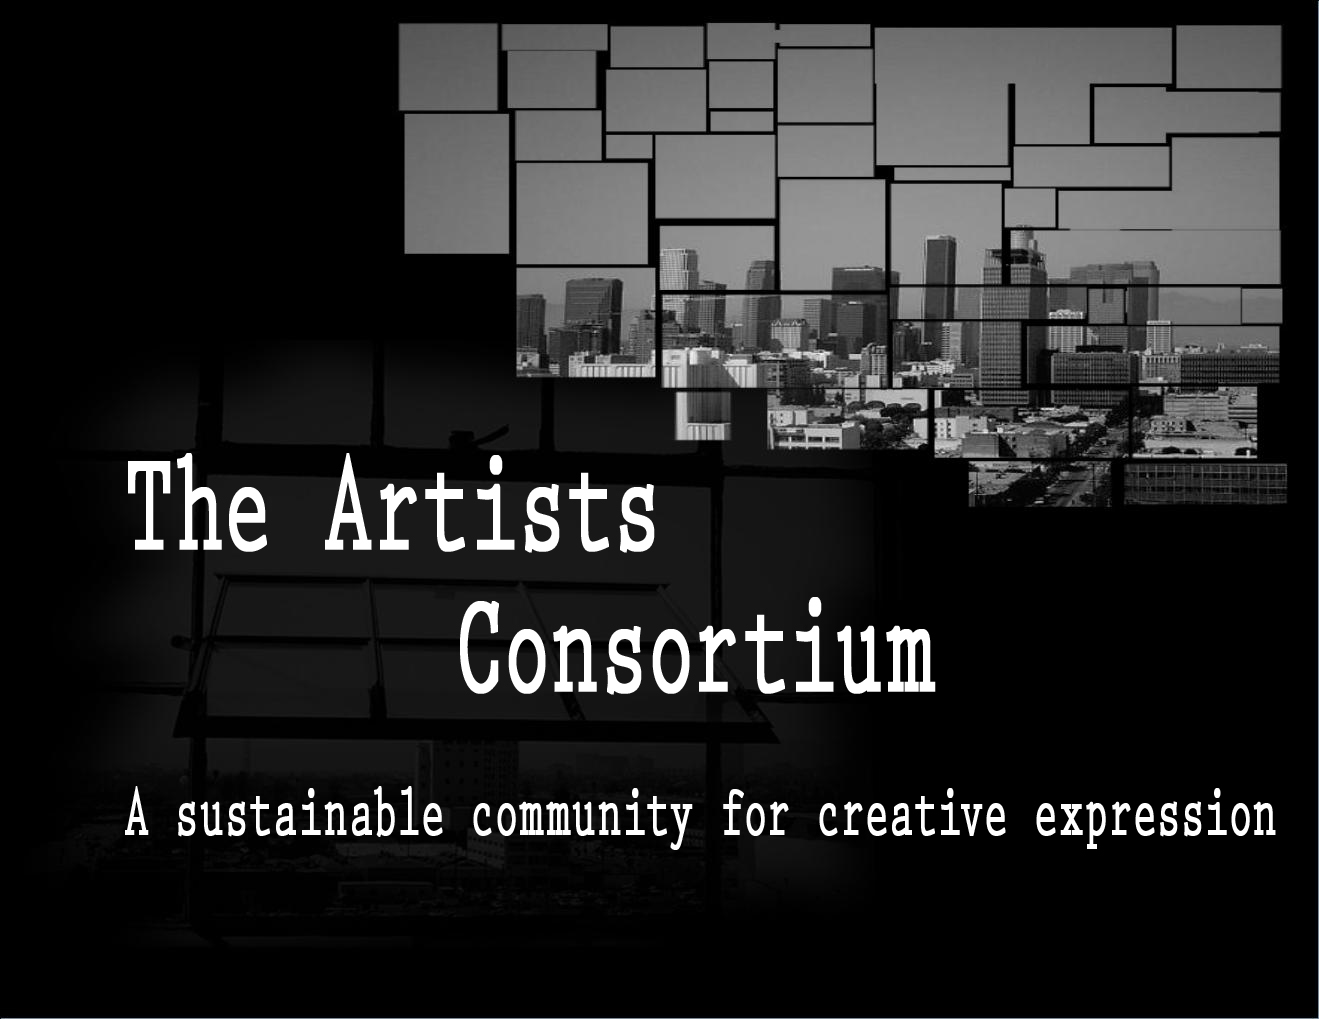 The Artist's Consortium